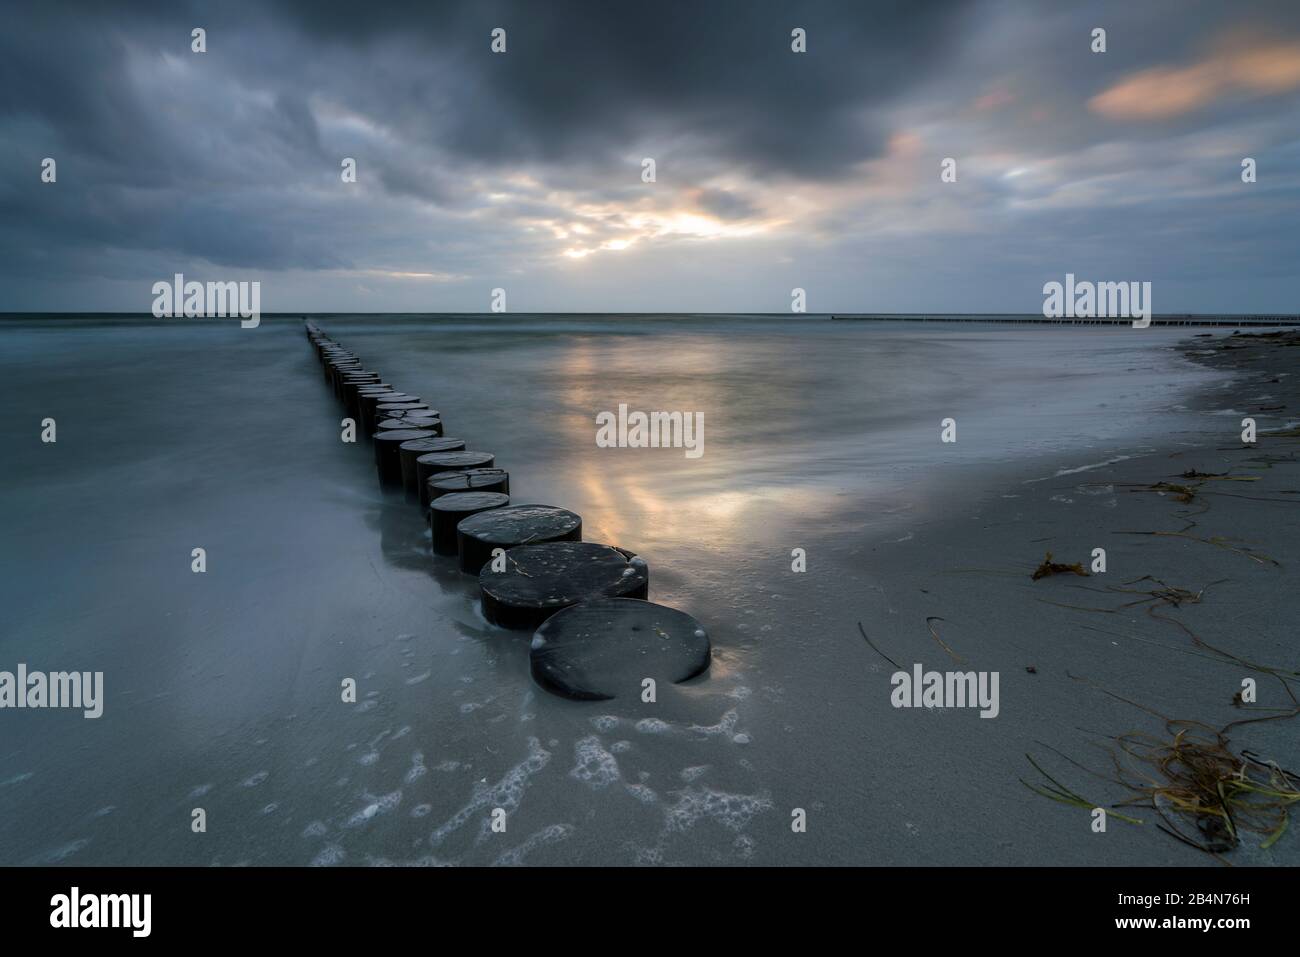 Strand an der Ostsee, Wolken und Buhnen im Abendlicht Foto de stock